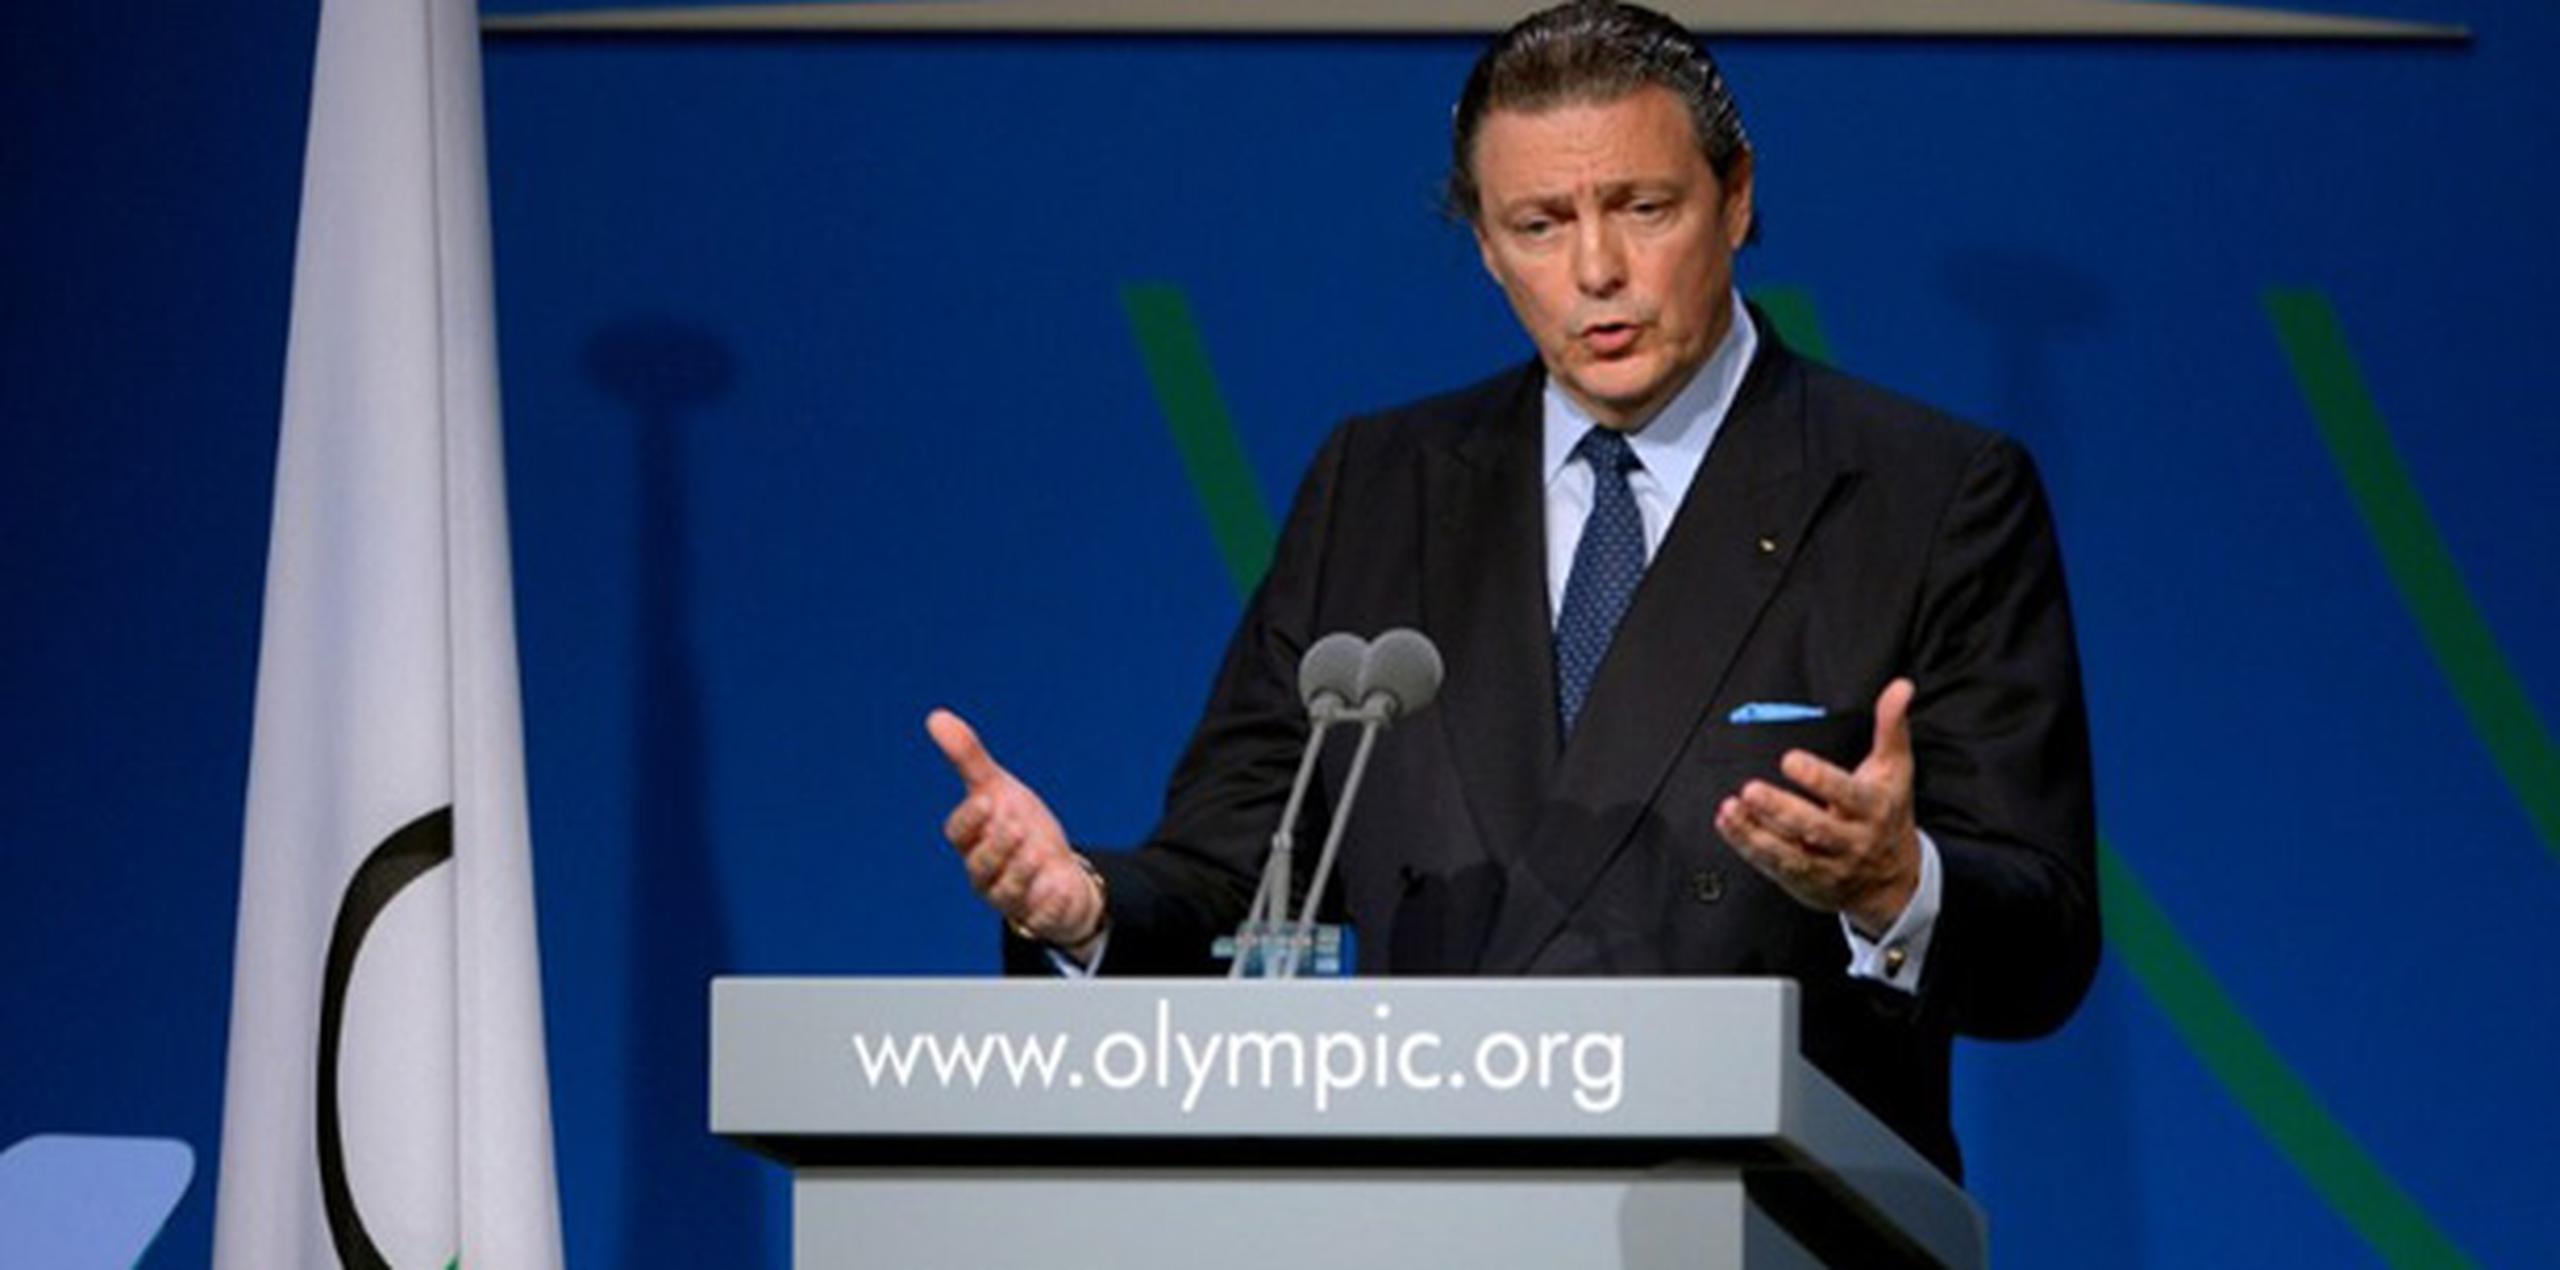 Para Carrión, su principal carta de presentación ha sido su responsabilidad en negociaciones que han llevado billones de dólares a las arcas del COI por concepto de ventas de derechos de transmisión de televisión de los Juegos Olímpicos. (AFP)